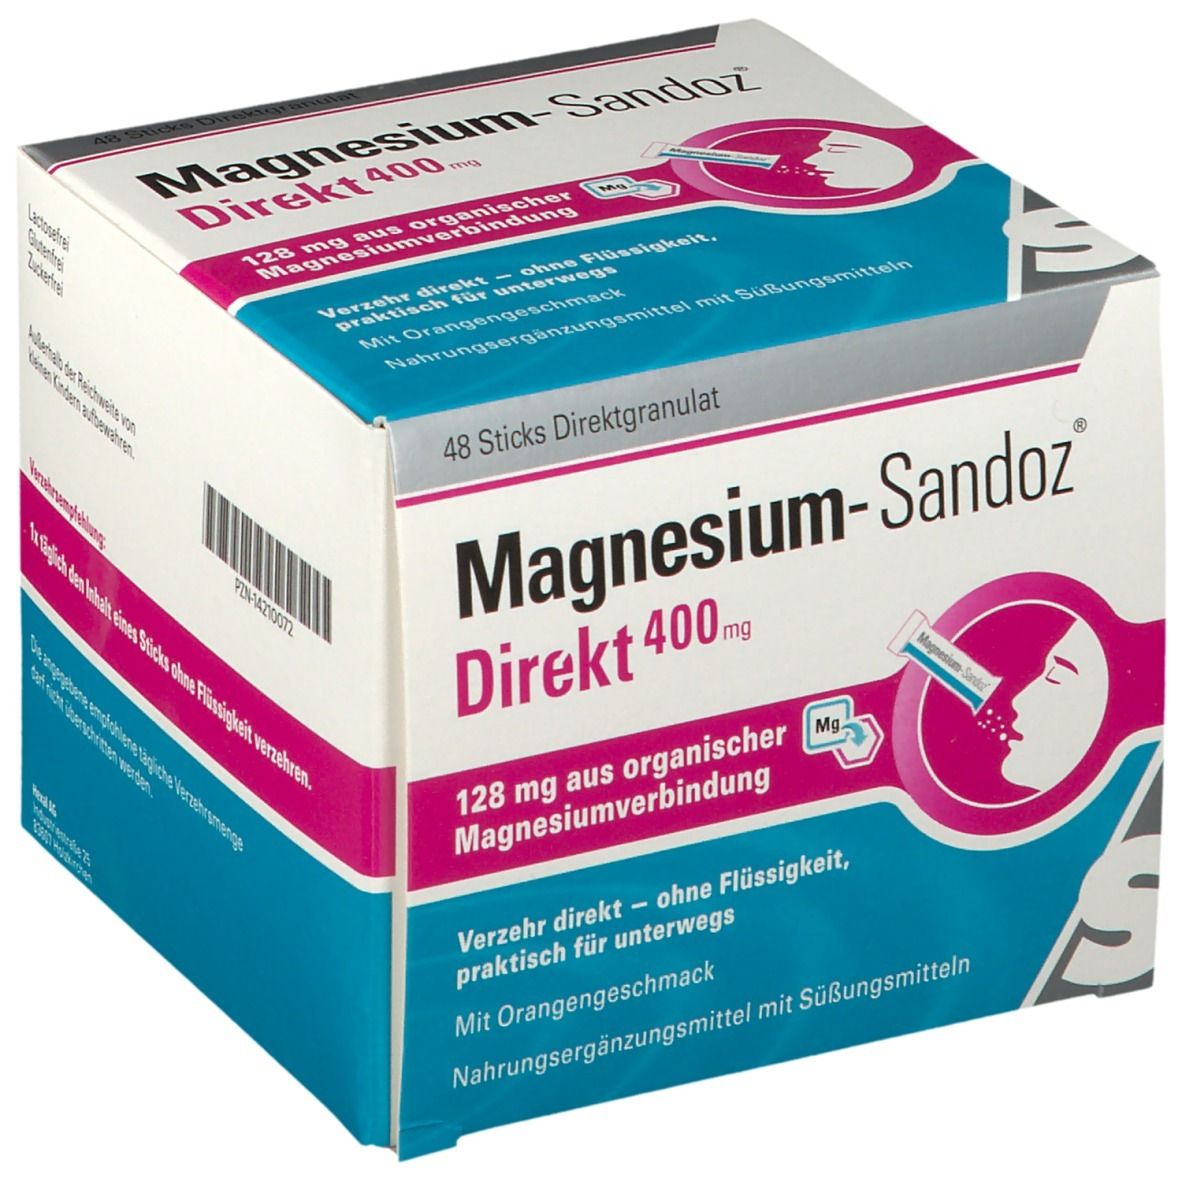 Magnesium-Sandoz® Direkt 400 mg